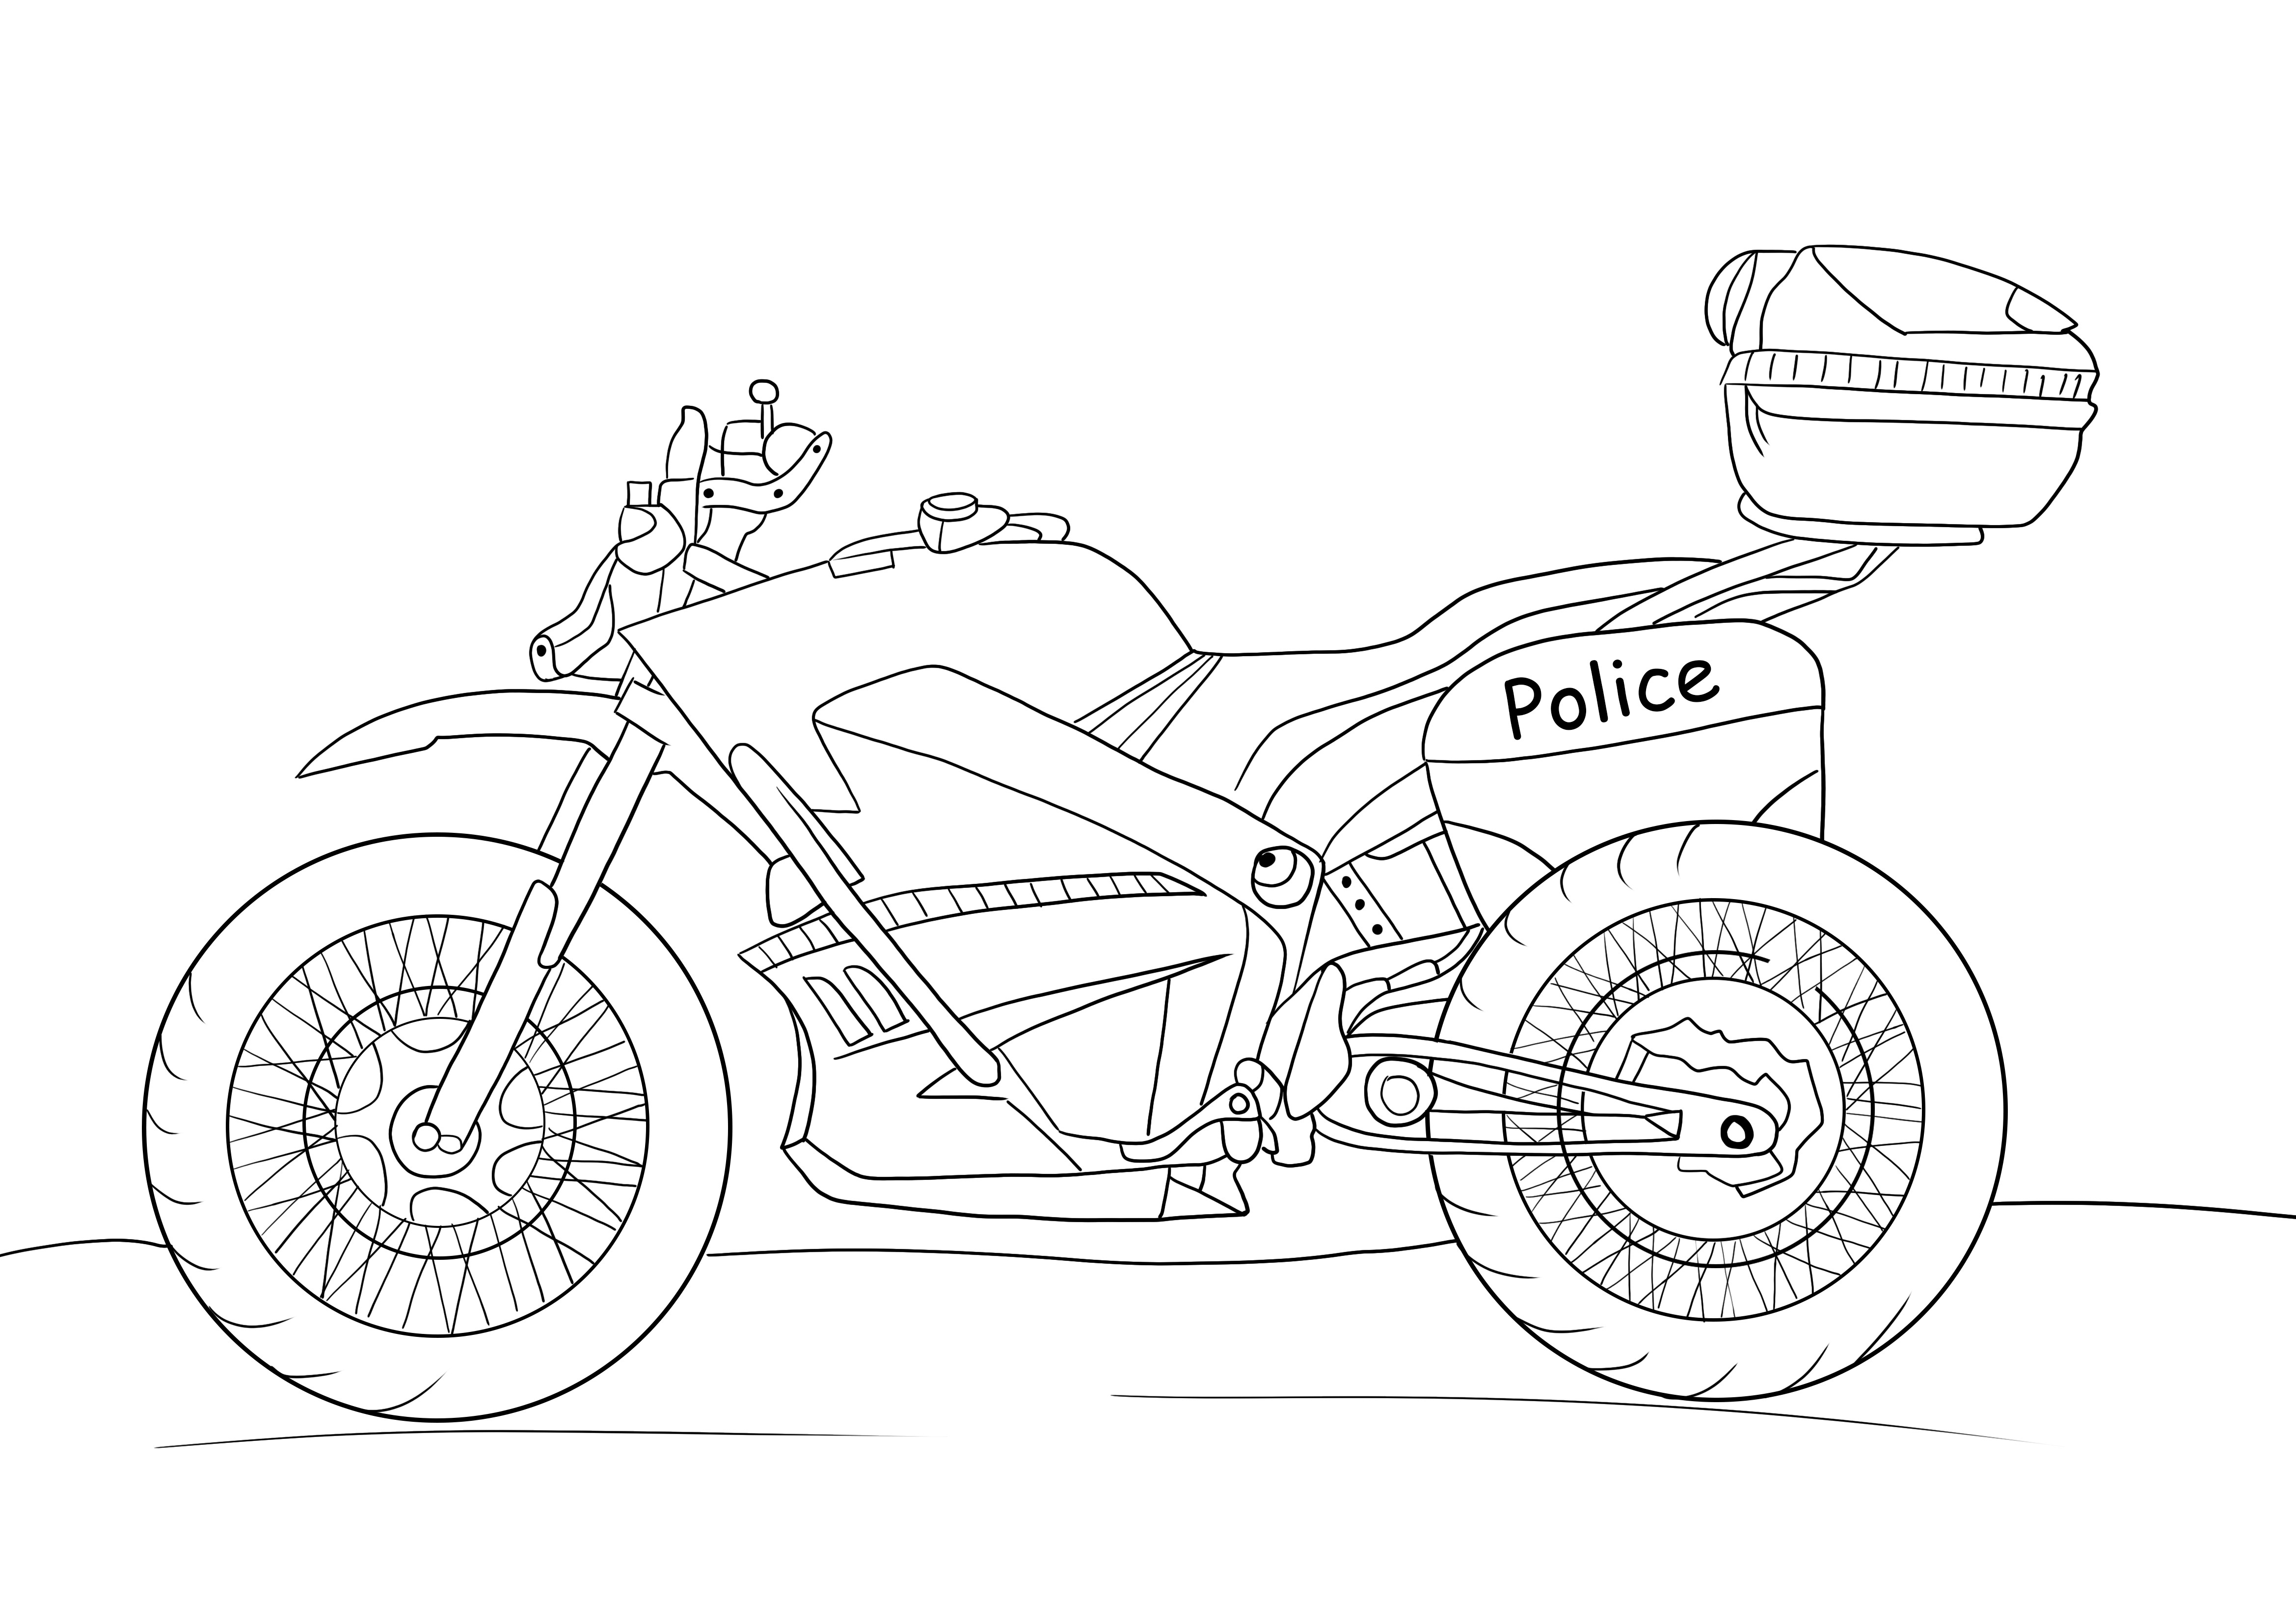 Poliisimoottoripyörä ilmainen tulostusarkki lapsille väritettäväksi